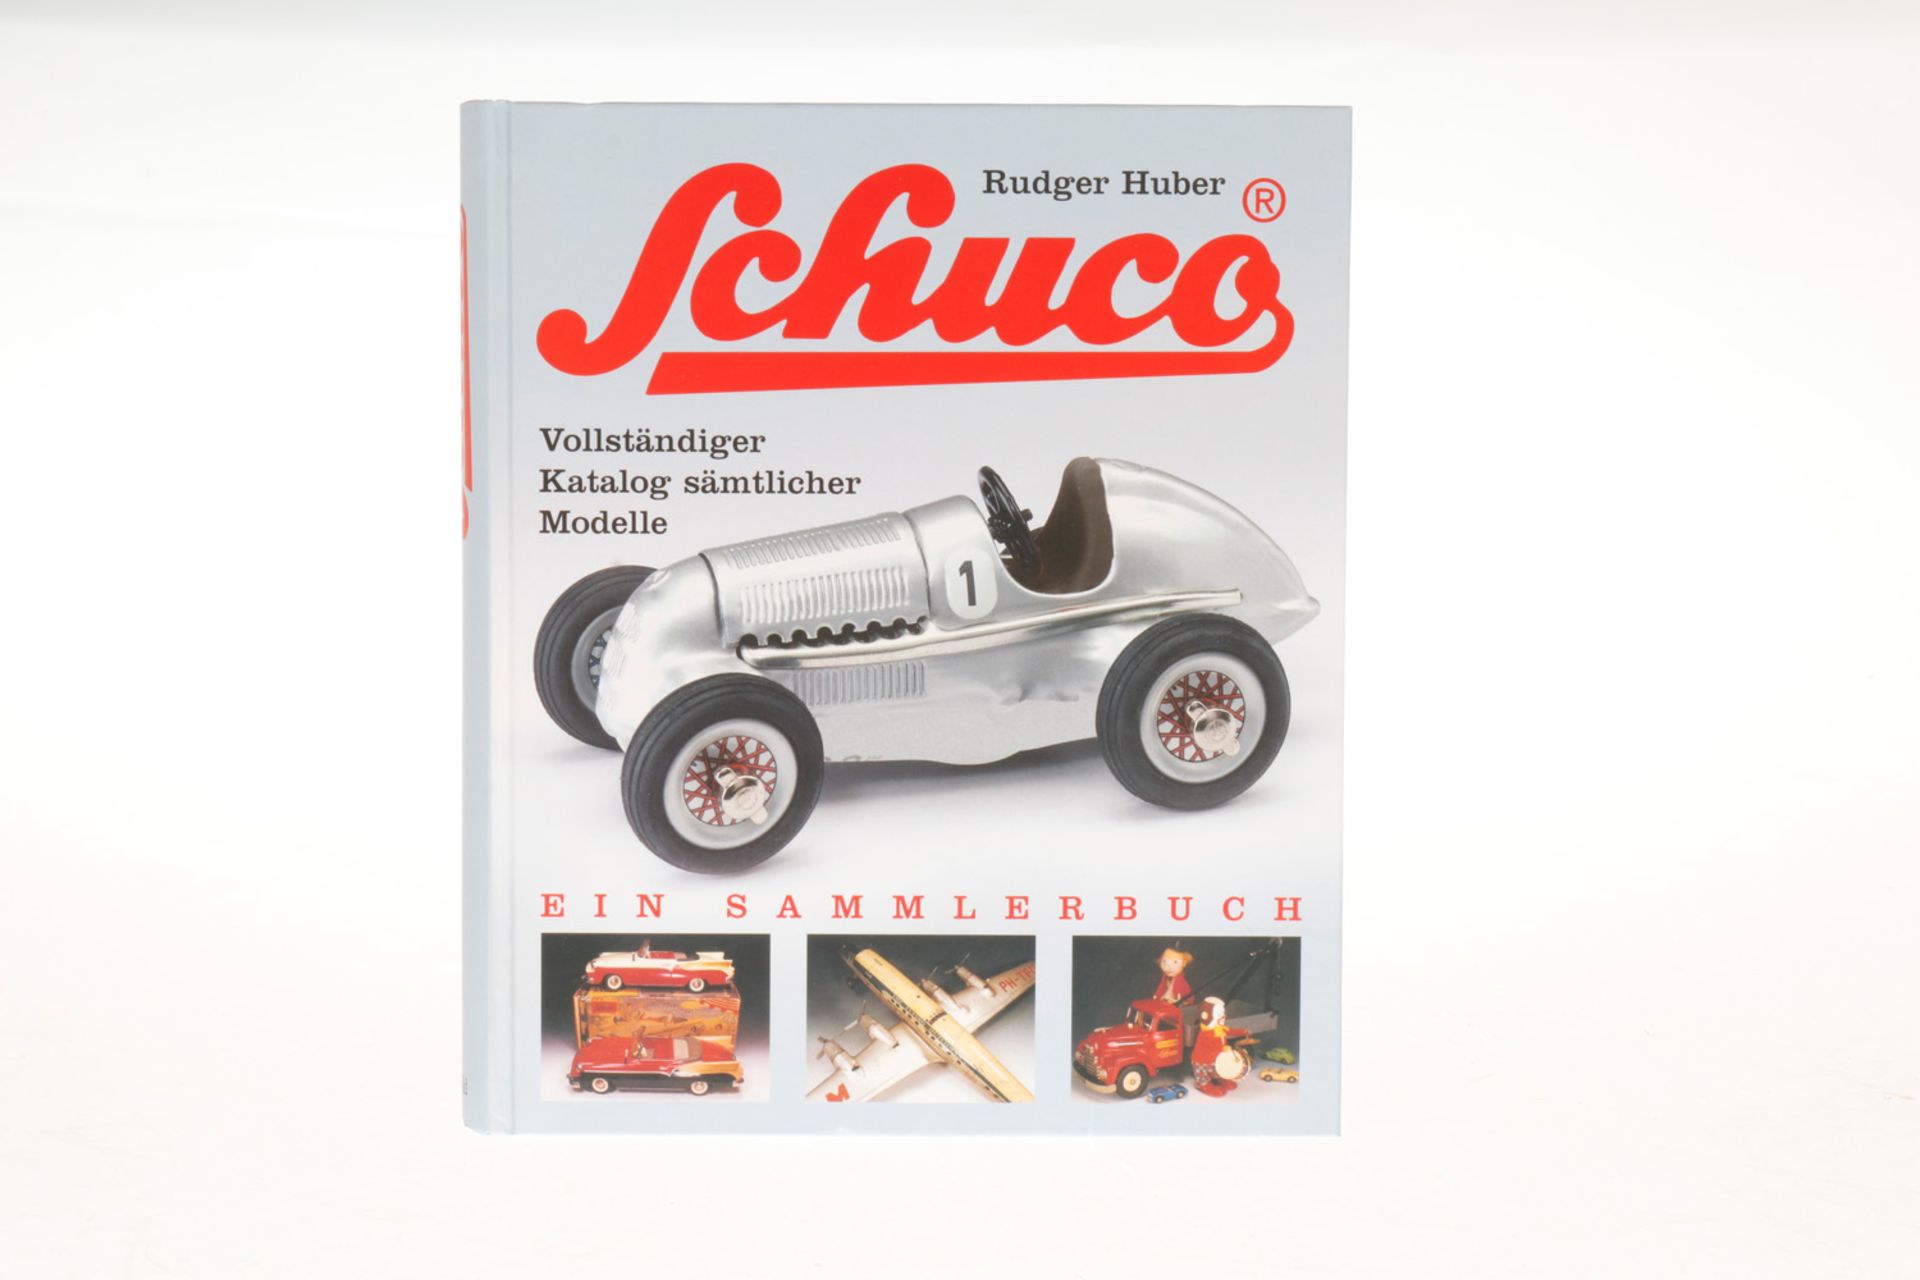 Buch "Schuco - Vollständiger Katalog sämtlicher Modelle", 447 Seiten, neuwertig